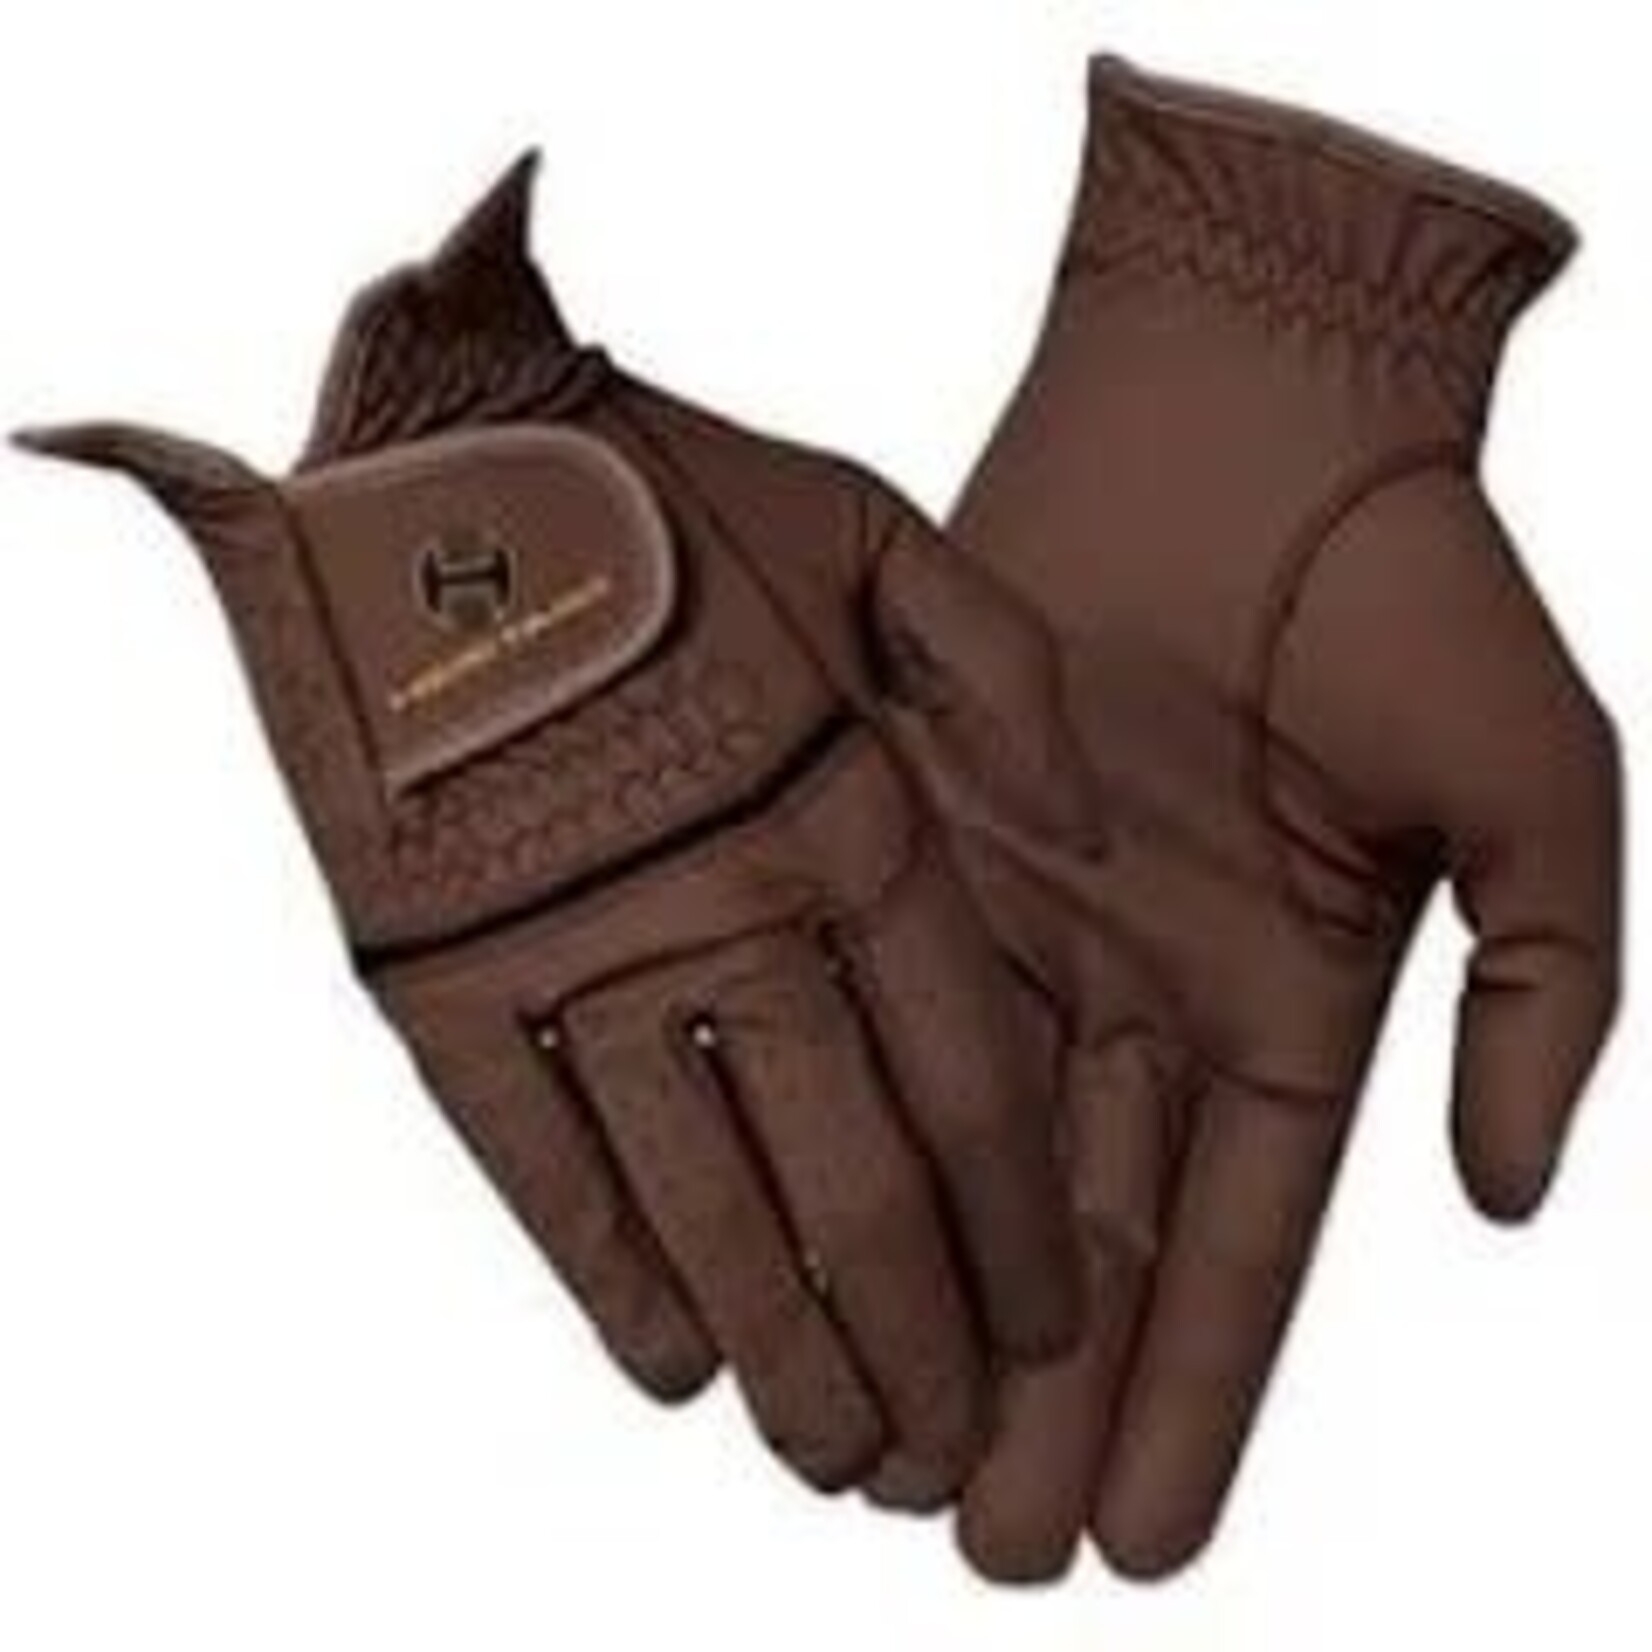 Heritage Gloves Heritage Premier Show Gloves